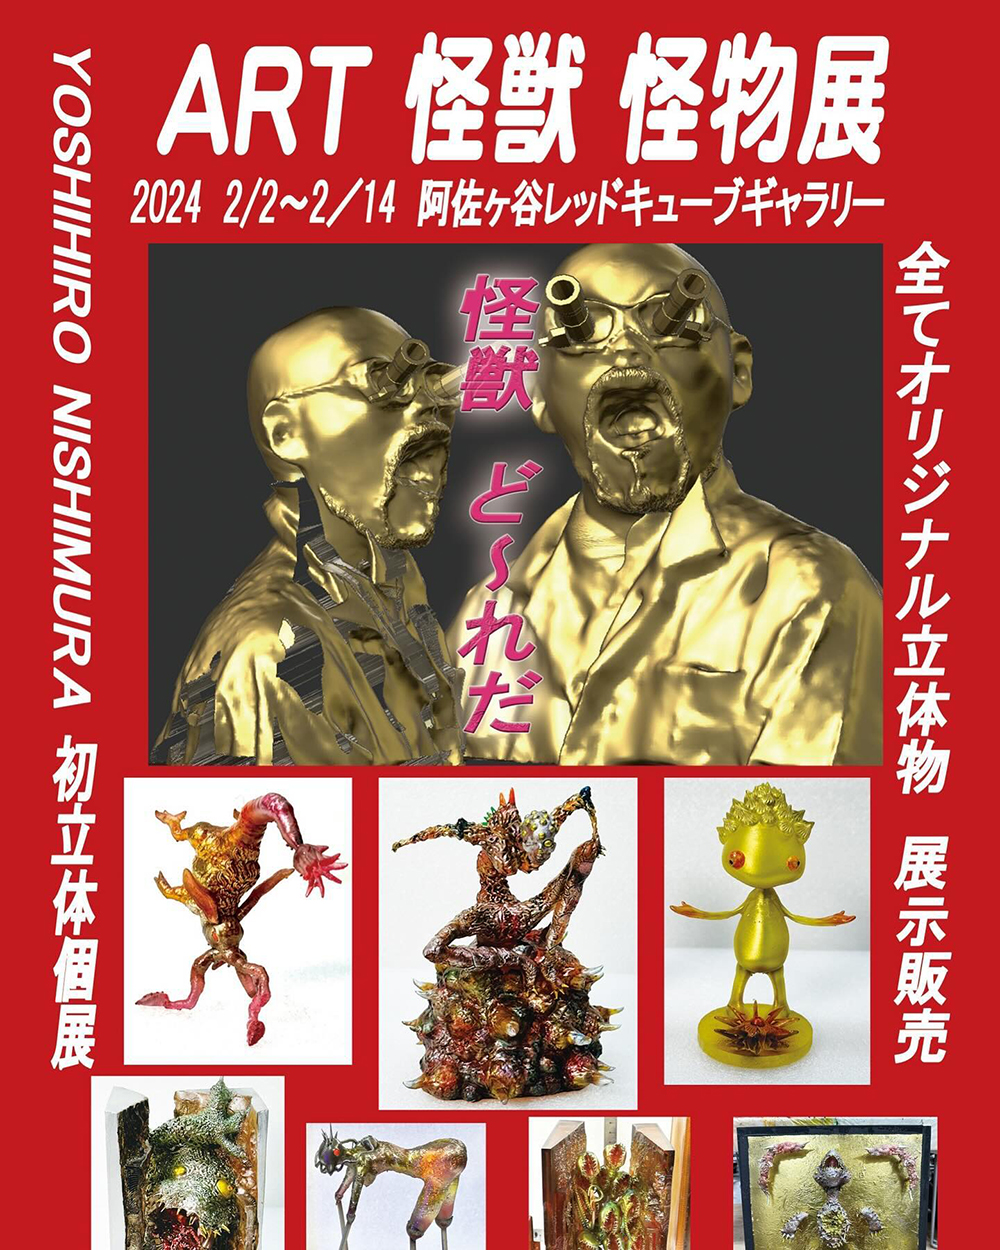 【阿佐ヶ谷】西村 喜廣 「ART 怪獣 怪物」展 レッドキューブギャラリー